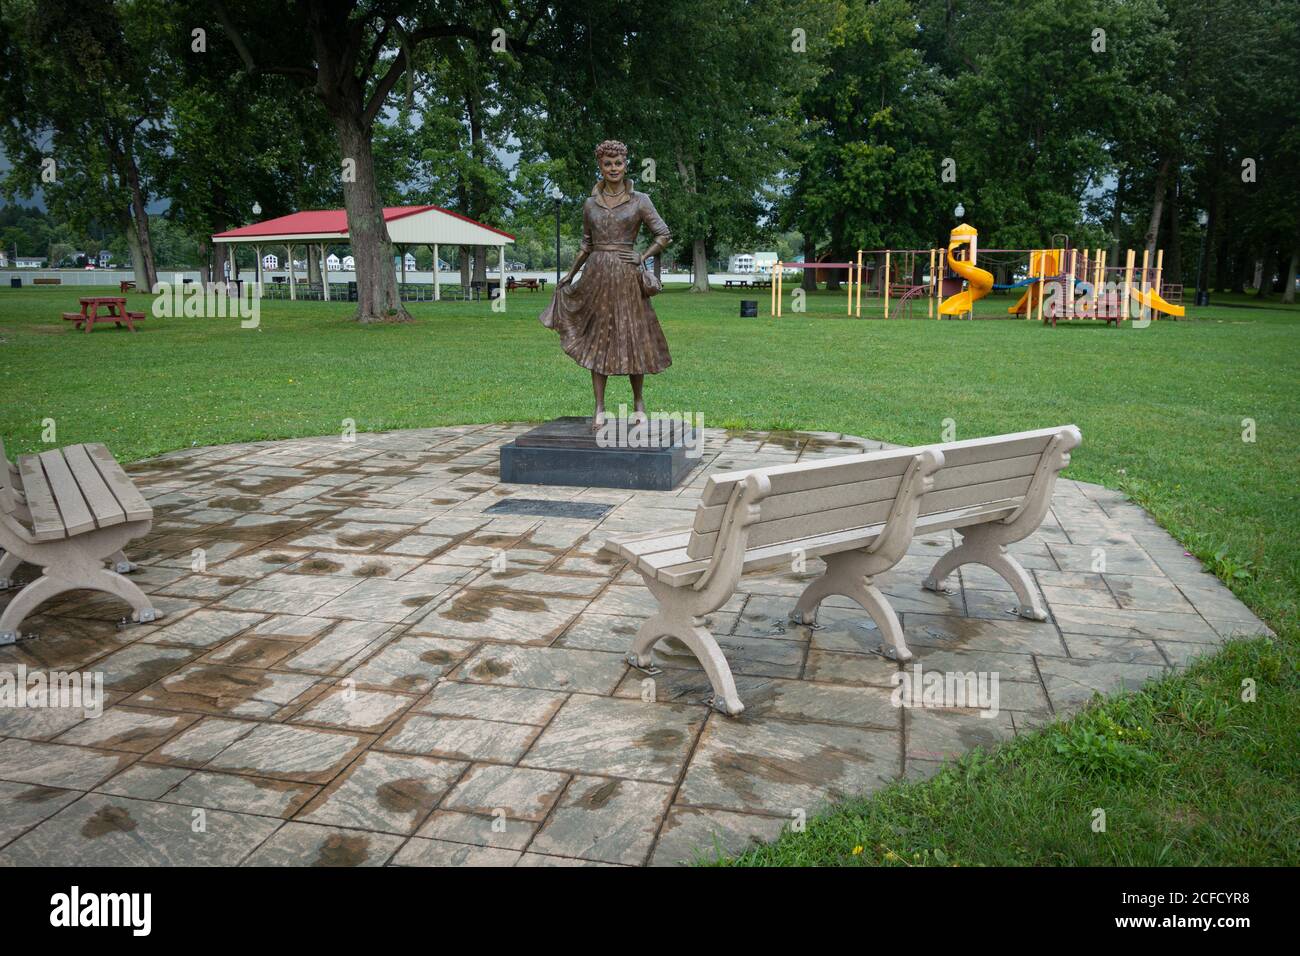 Statua di bronzo della comedienne Lucille Ball dell'artista Carolyn Palmer, Lucille Ball Memorial Park, Celeron, NY, USA Foto Stock